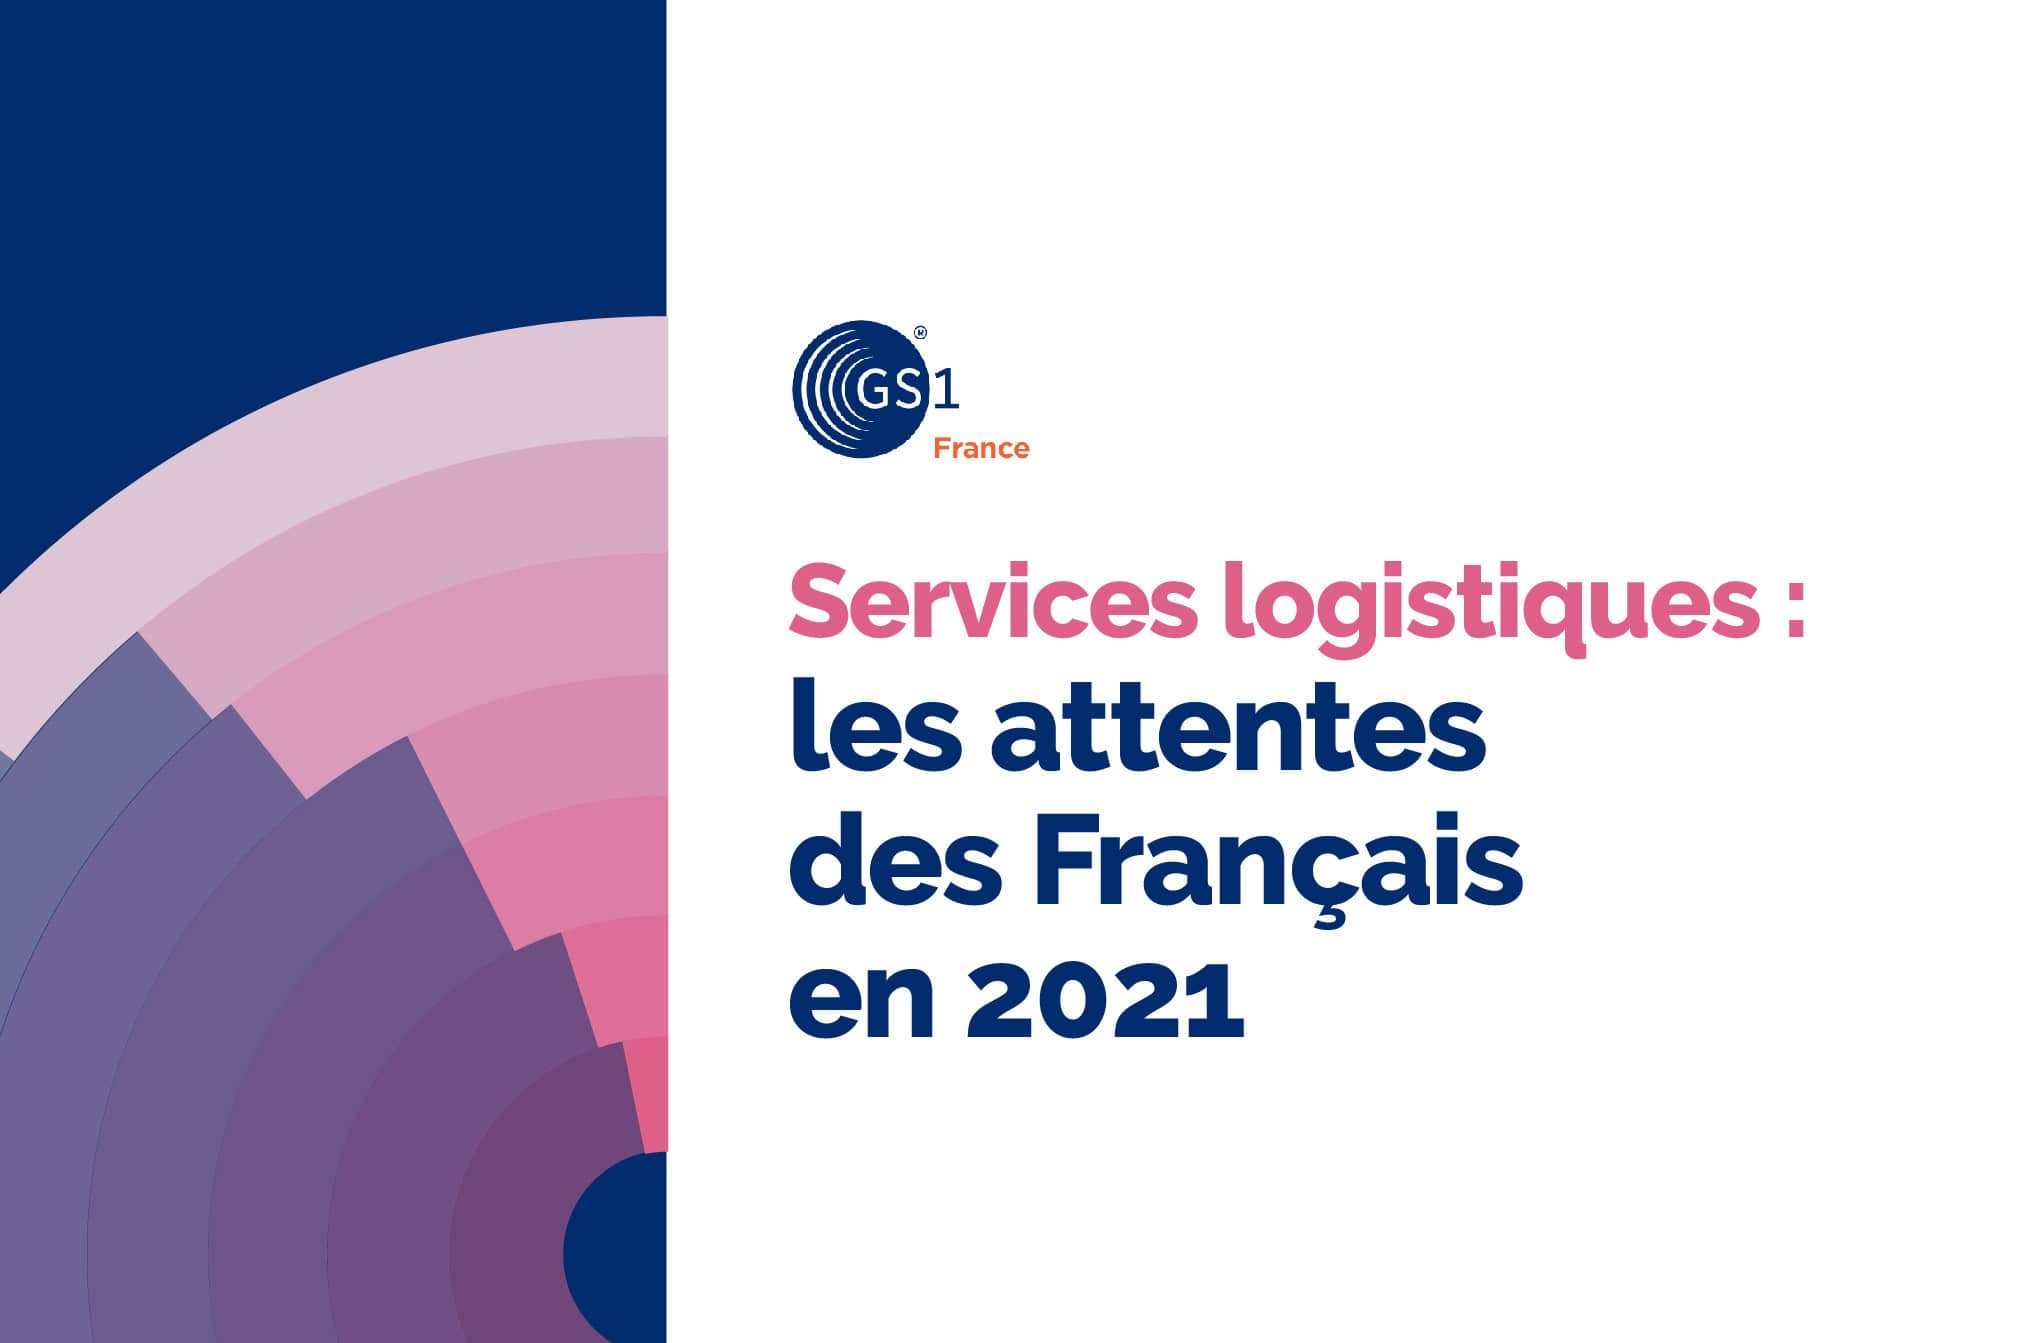 services logistiques attentes francais 2021